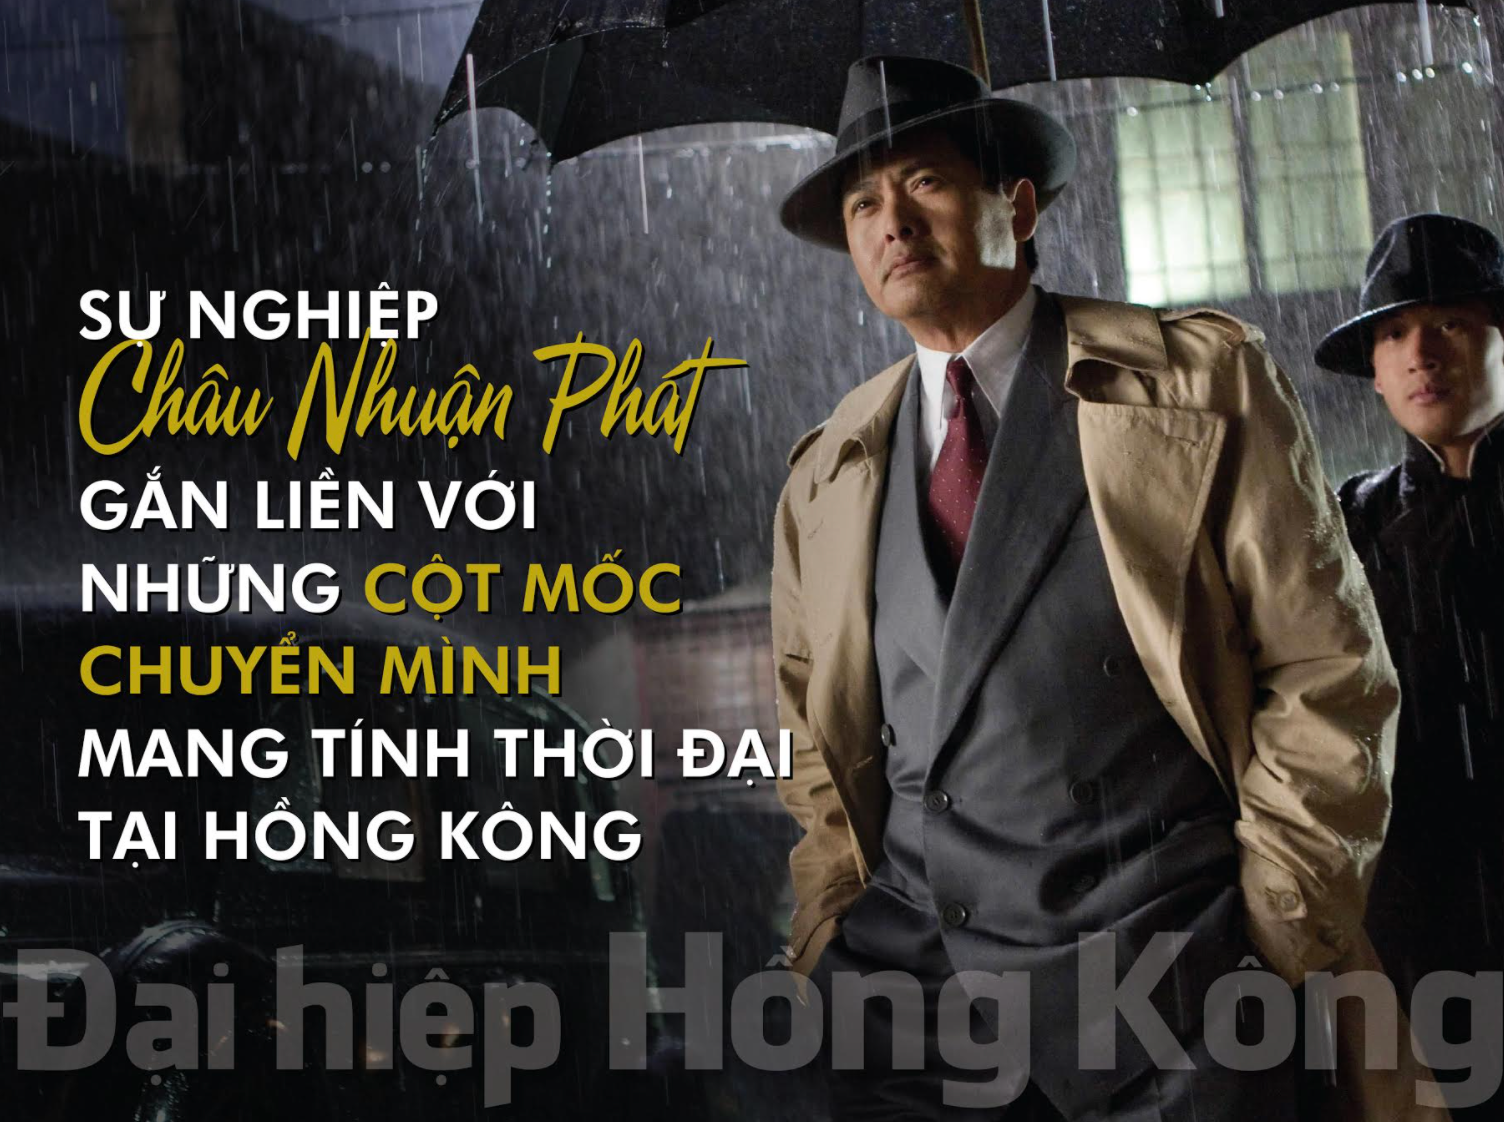 Châu Nhuận Phát: Từ thần tượng TVB đến biểu tượng Hồng Kông ở Hollywood - 1